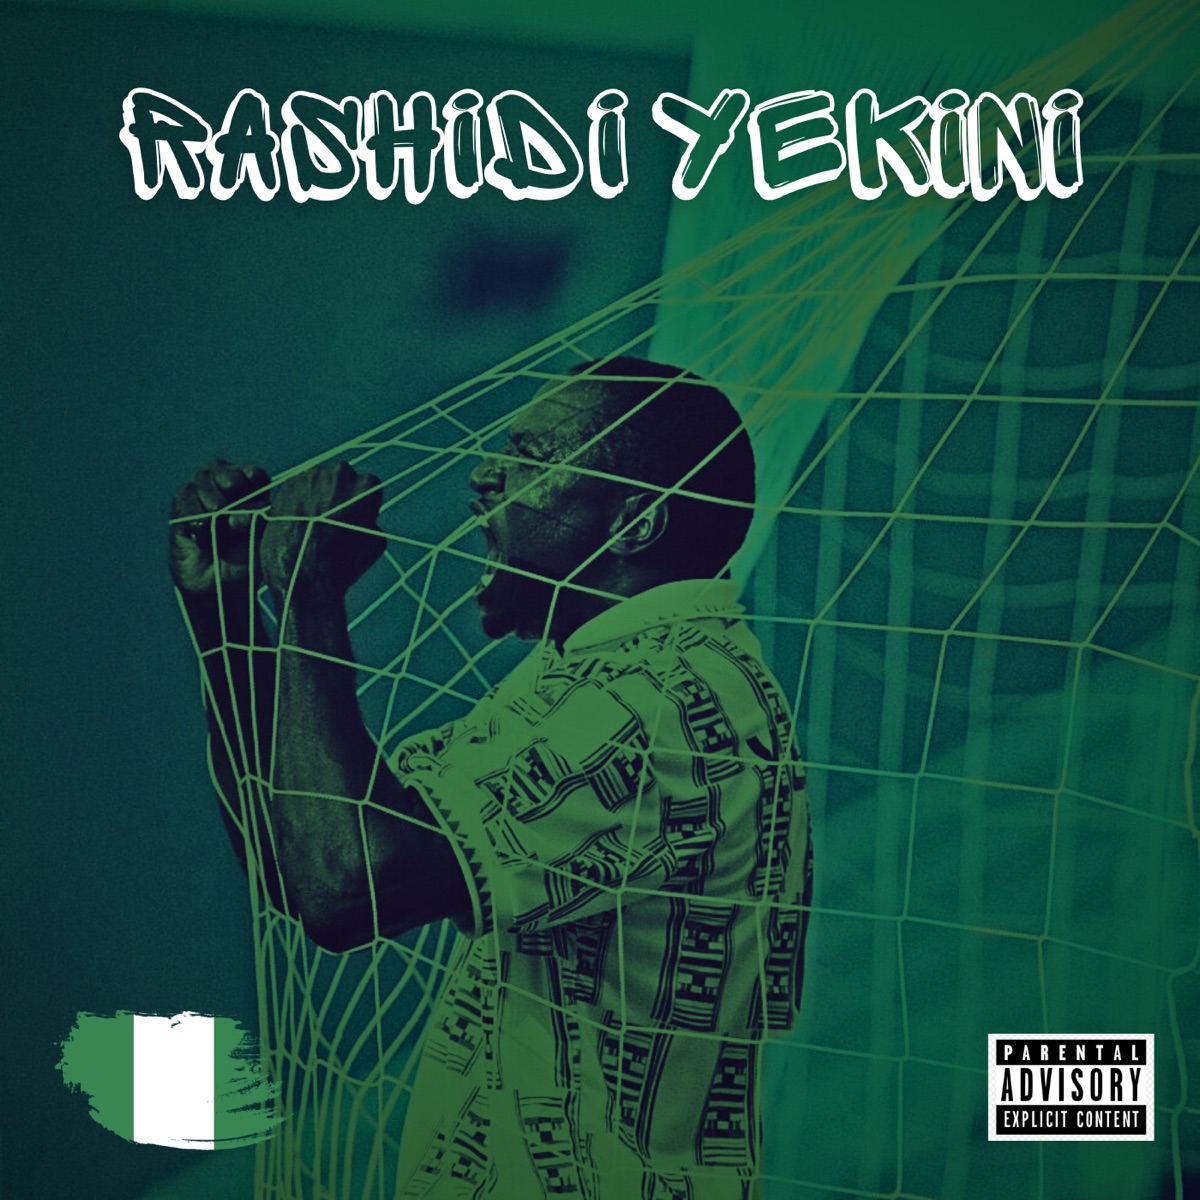 Qeeb &Amp; Oluwamillar - Rashidi Yekini, Yours Truly, Music, May 20, 2024